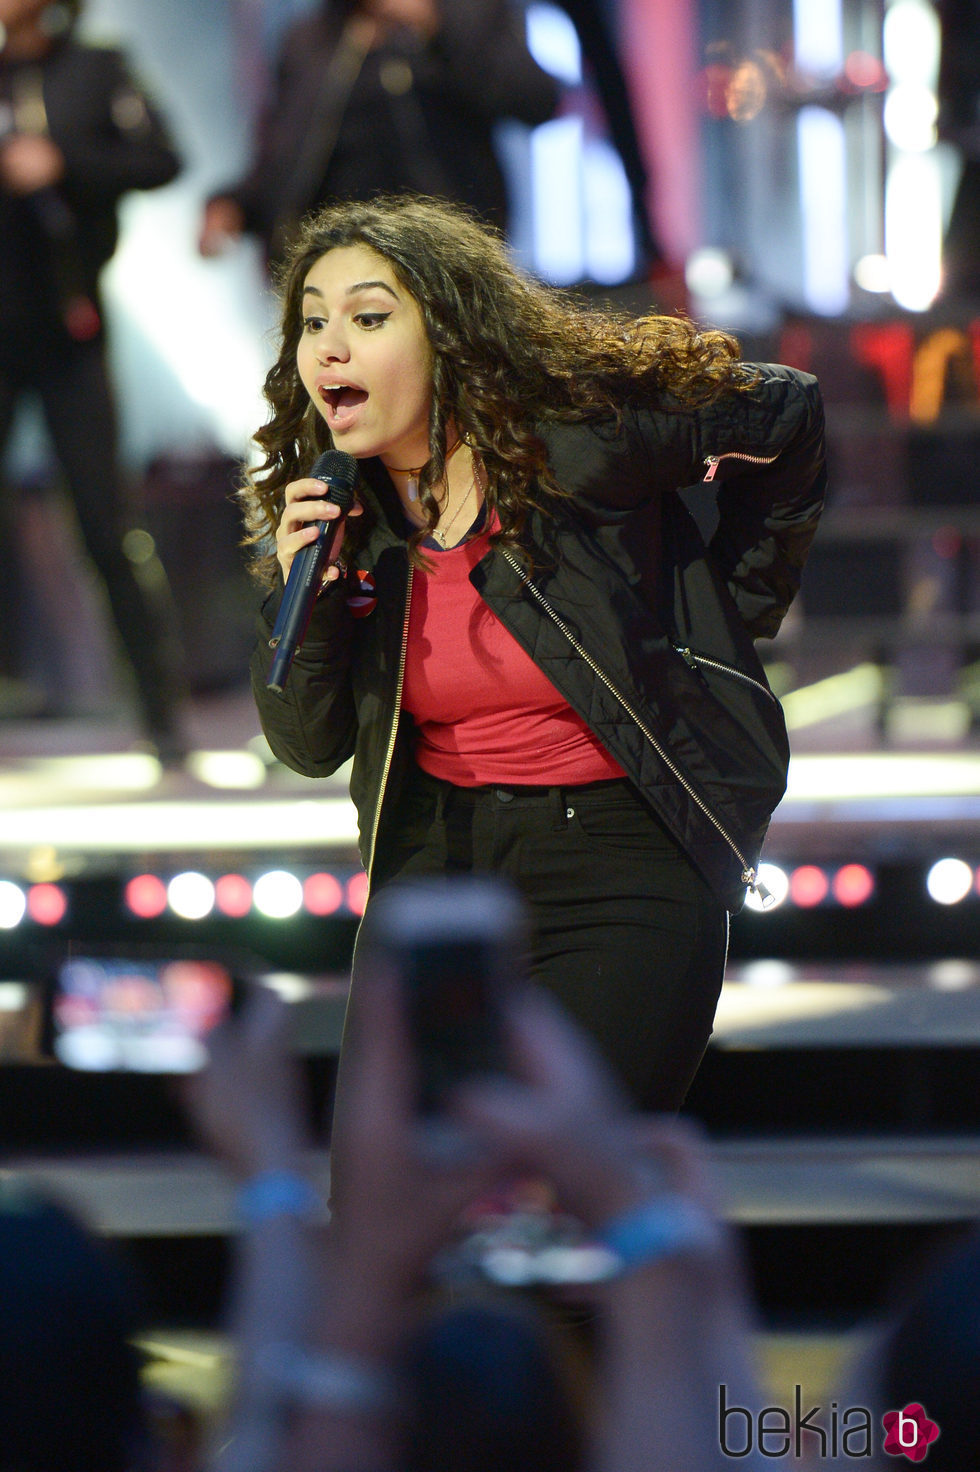 Alessia Cara actuando durante los premios iHeartRADIO MuchMusic Video